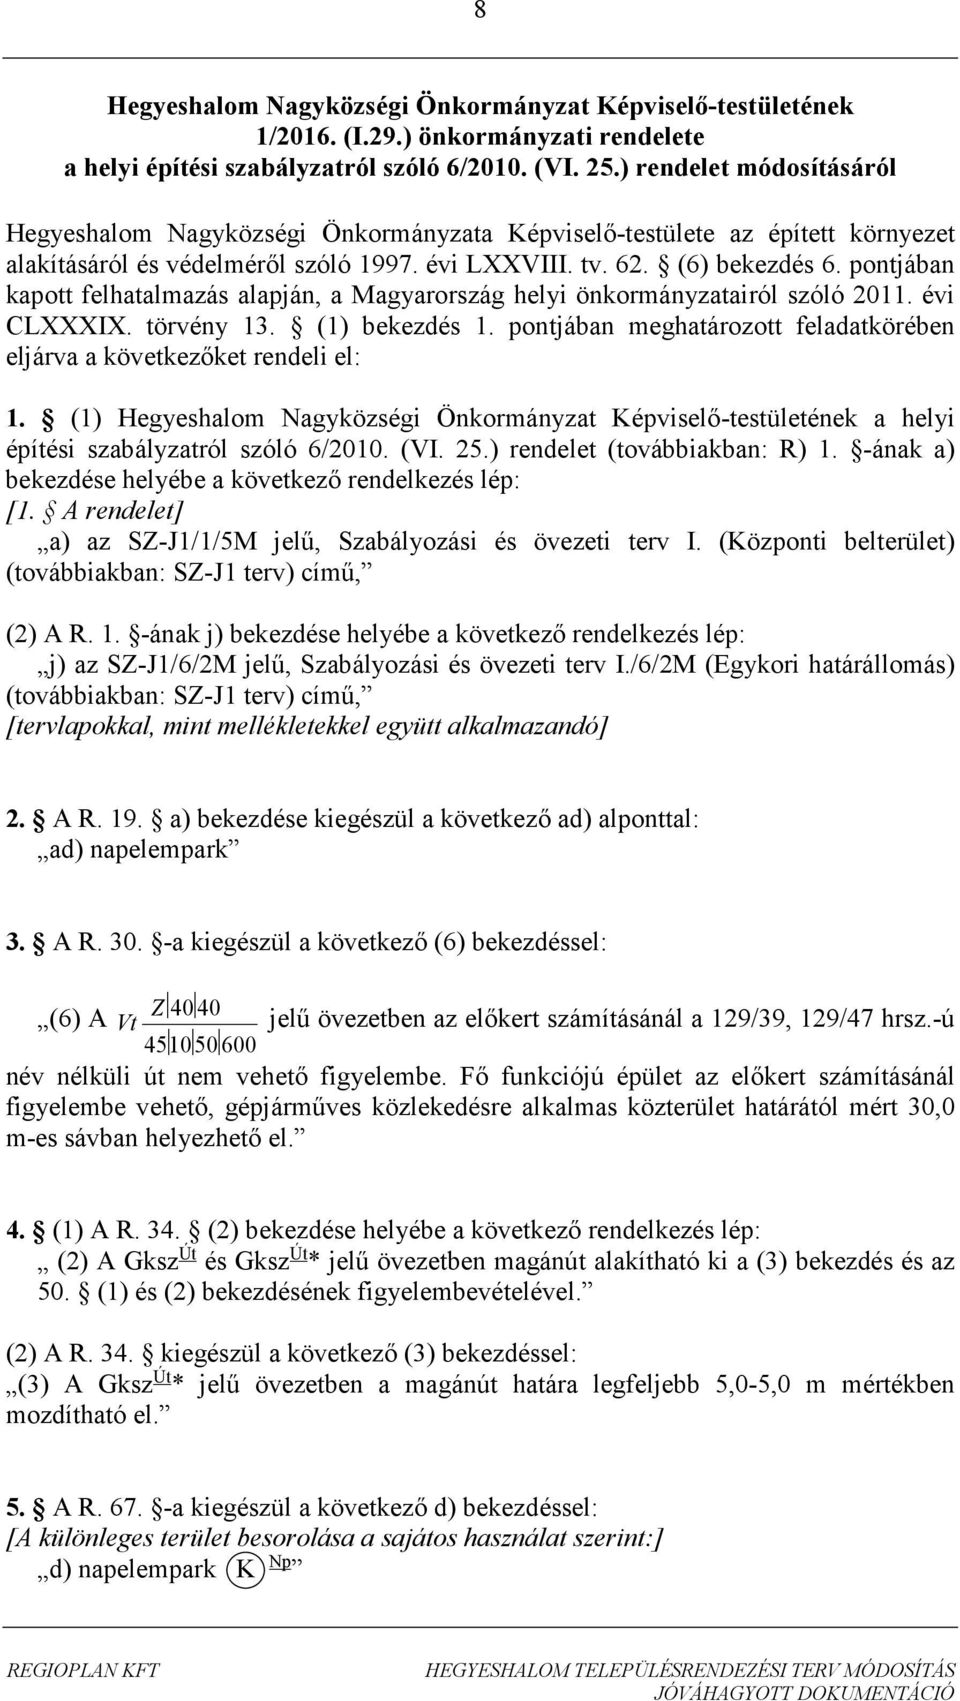 pontjában kapott felhatalmazás alapján, a Magyarország helyi önkormányzatairól szóló 2011. évi CLXXXIX. törvény 13. (1) bekezdés 1.